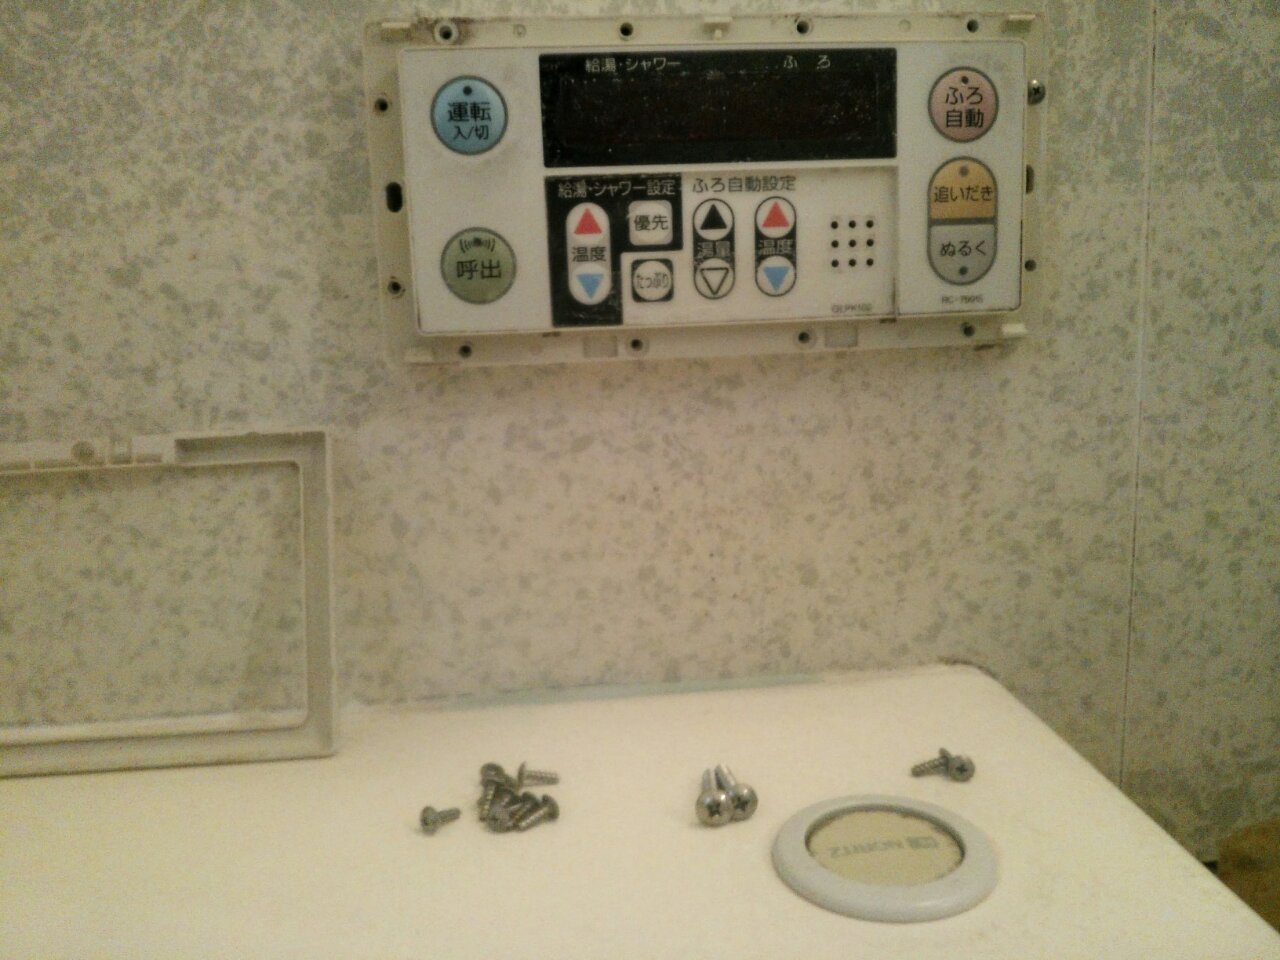 Taigaのささやき: 浴室リモコンが故障したが製品の交換で復旧